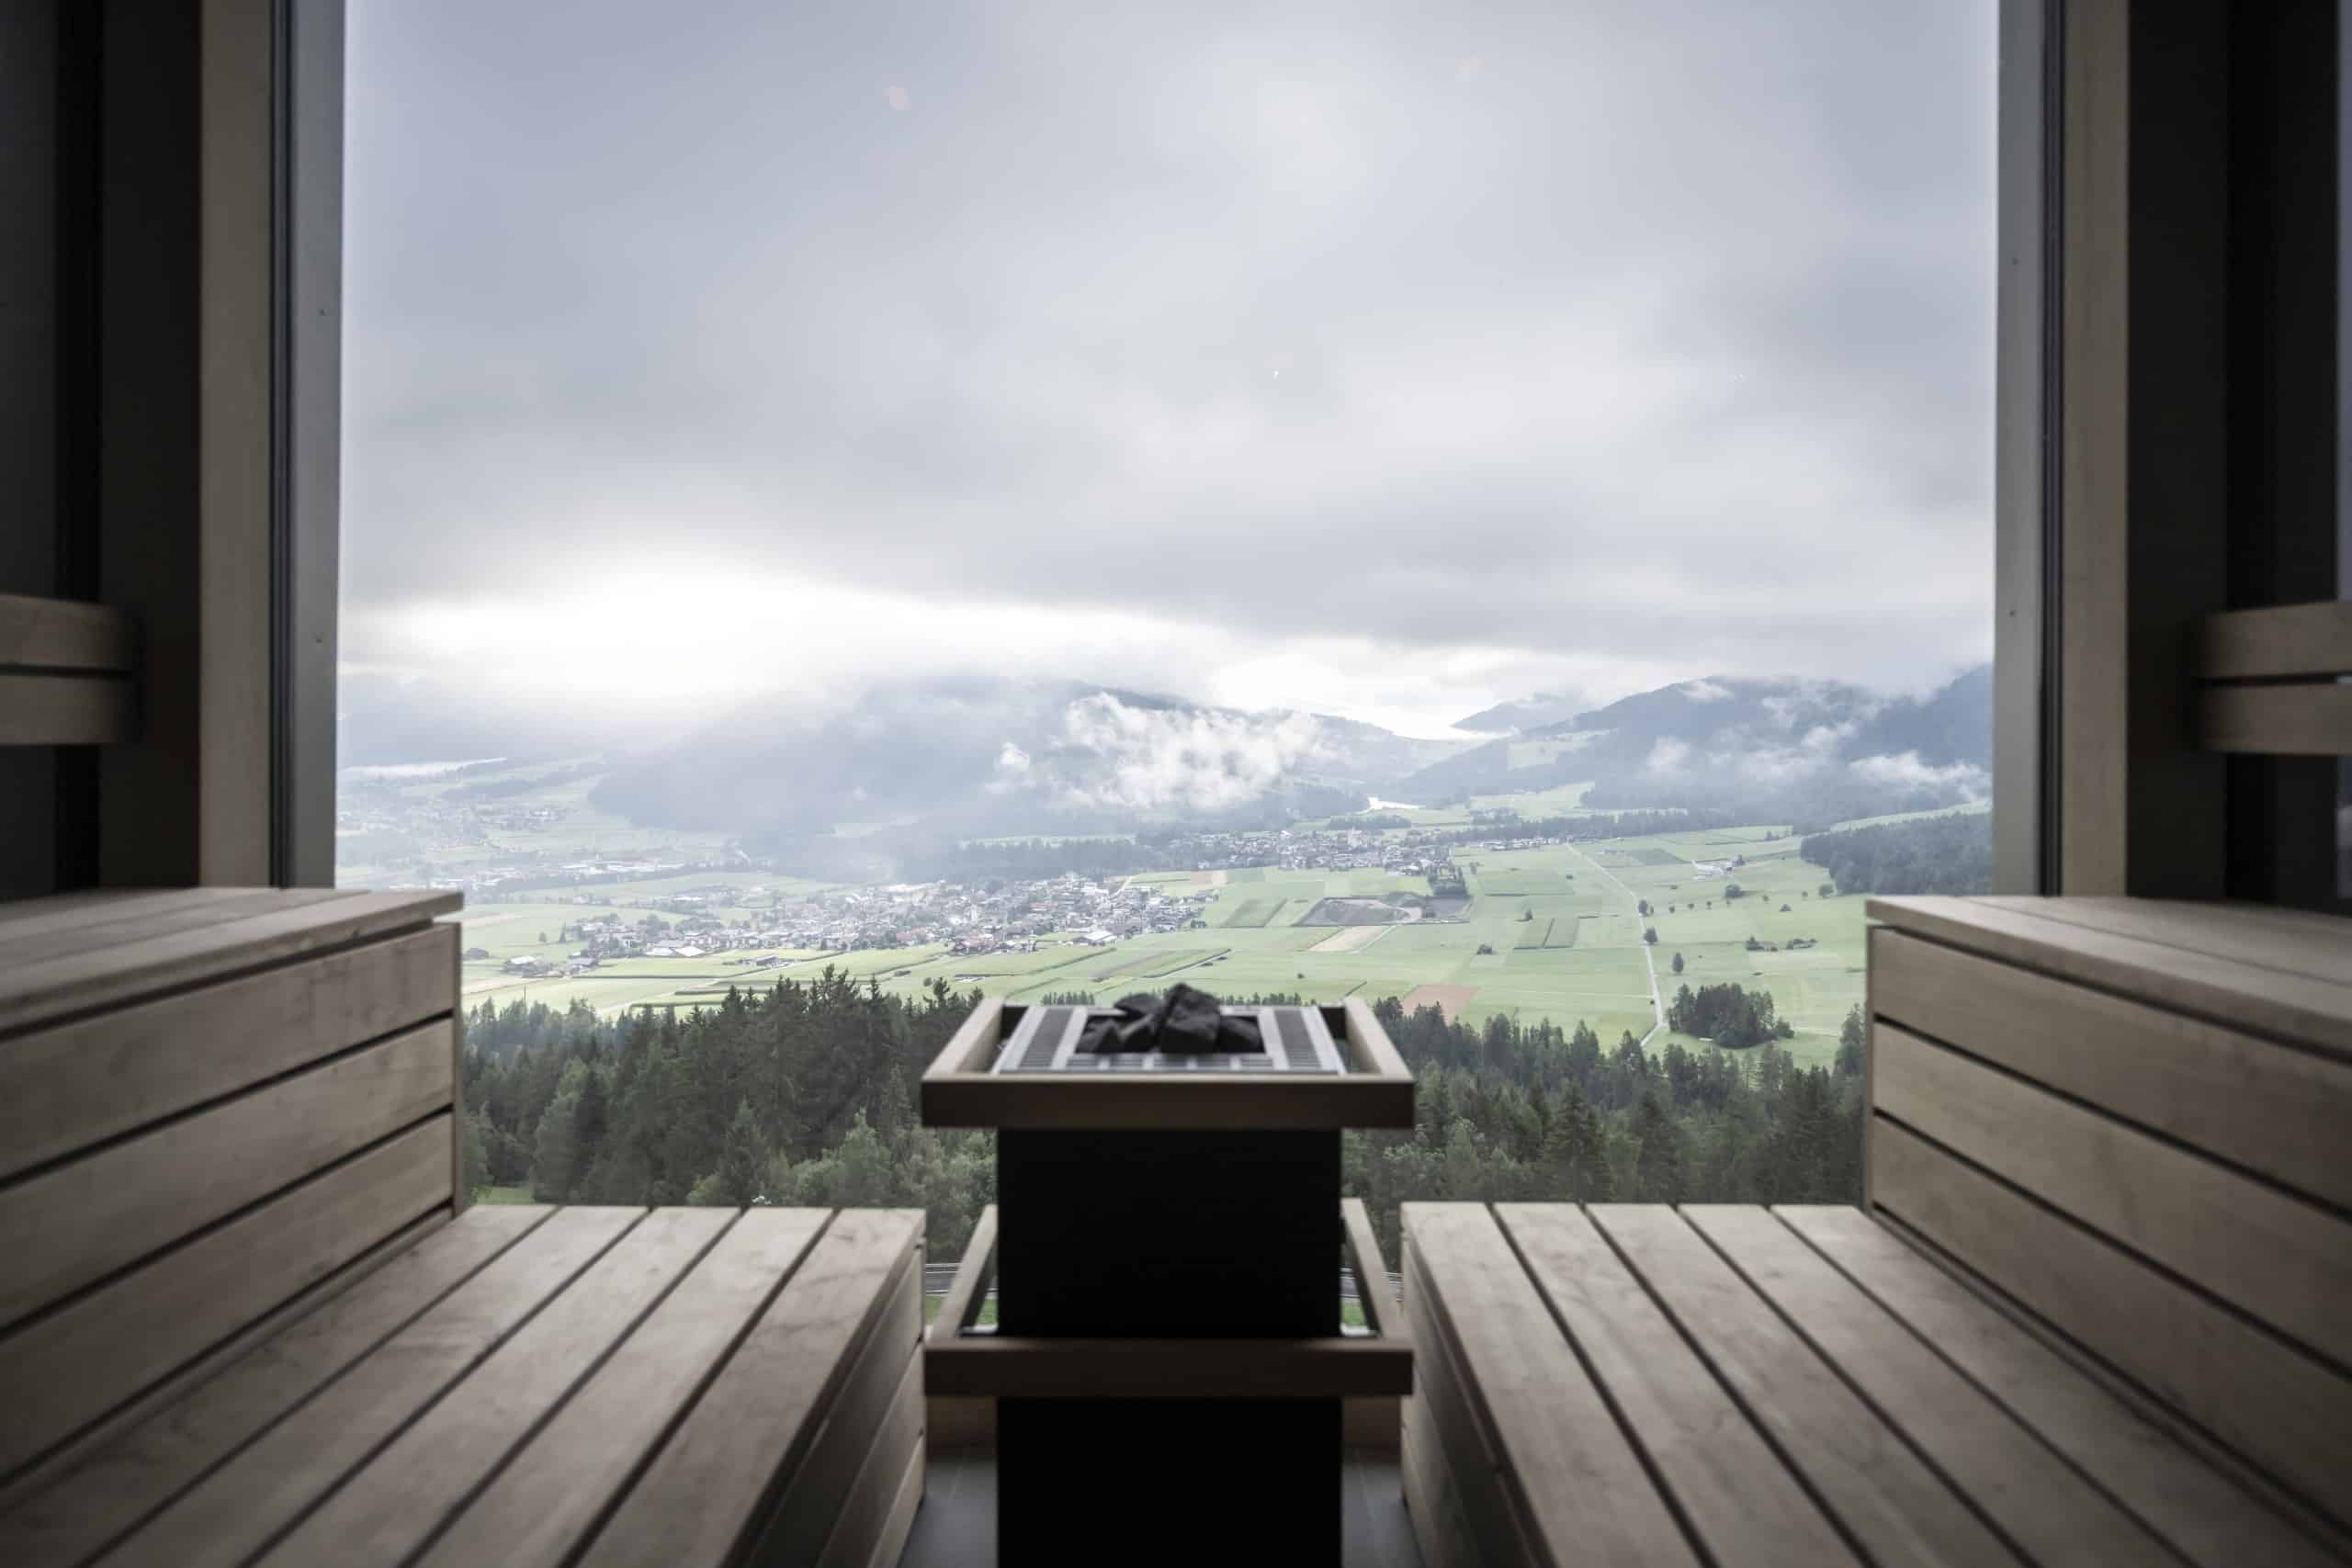 Im Vordergrund zwei hölzerne Sitzbänke einer Sauna, dazwischen ein Saunaofen, dahinter ein bodentiefes Fenster mit Ausblick auf eine weite Landschaft mit Bergen. Noa* Network of Architecture, Hub of Huts, Hotel Hubertus Olang, Foto: ©AlexFilz